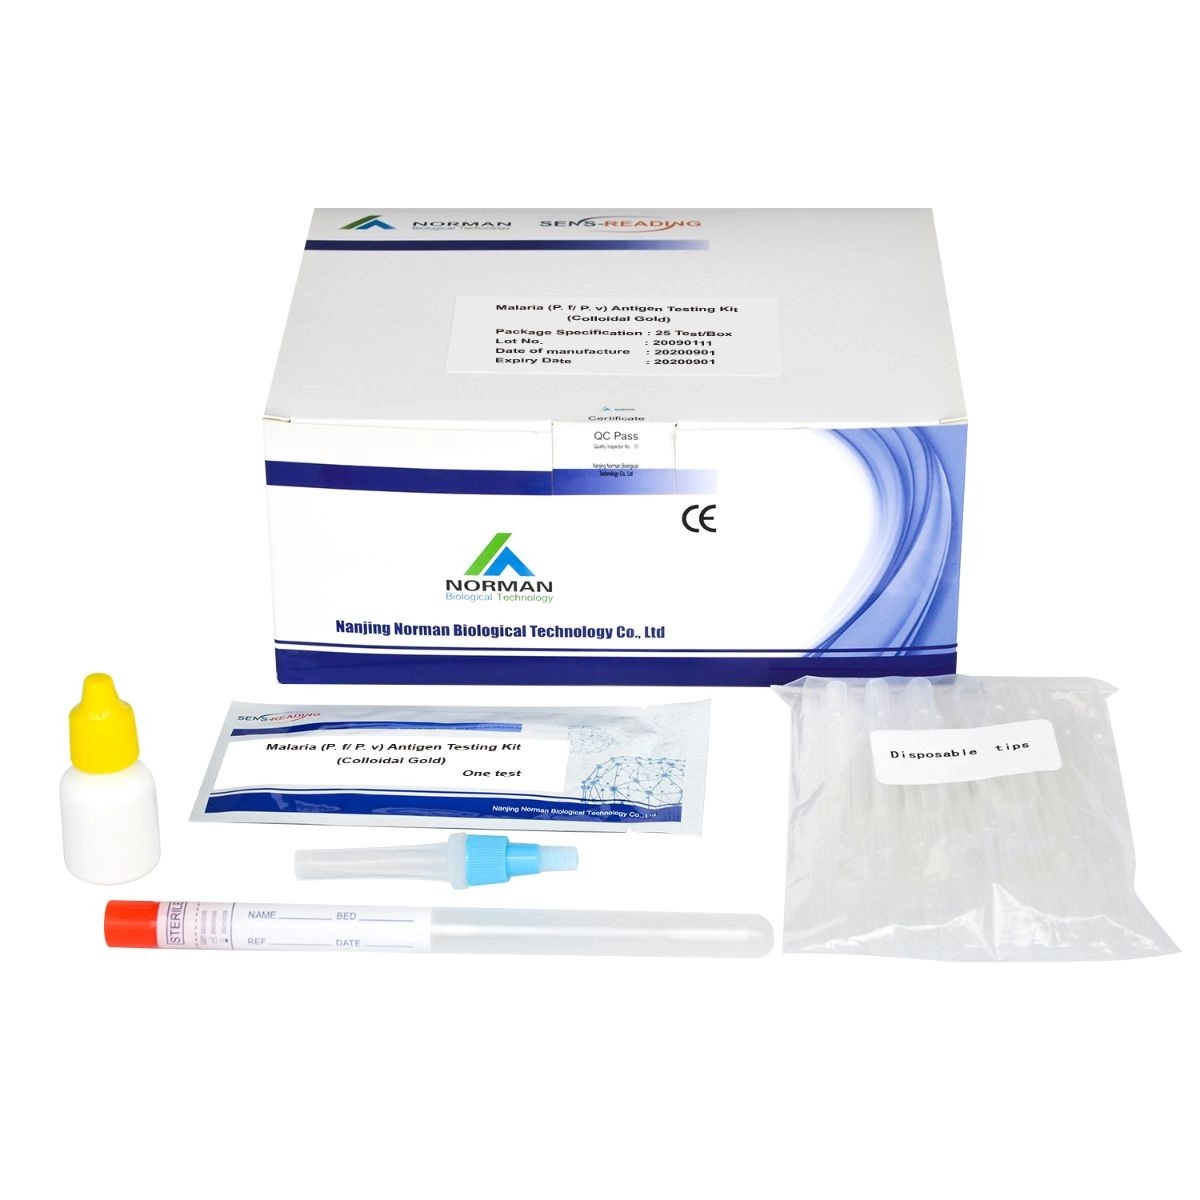 Malaria (P. f P. v) Kit de Teste de Antígeno